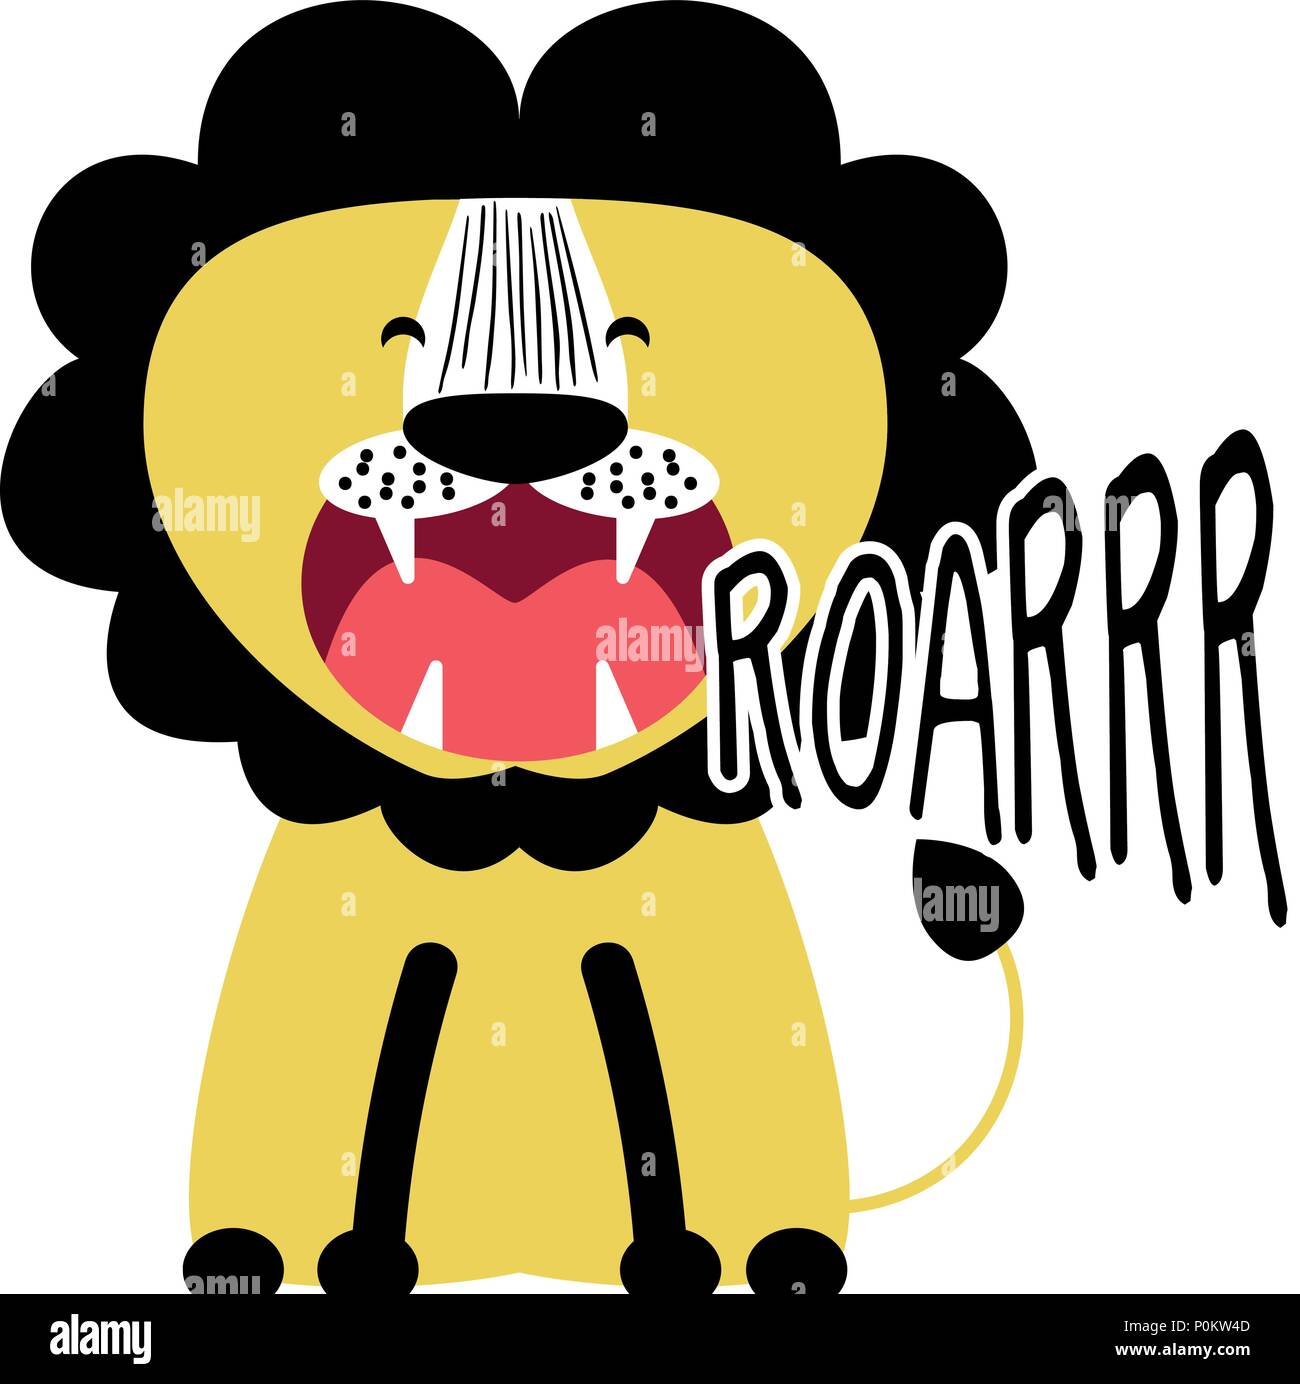 Roarrr Lion' lustig Vektor Charakter zeichnen. Schriftzug Poster oder t-shirt Textil Grafik Design. /Süß lion Charakter Abbildung. Handschriftlichen text Stock Vektor